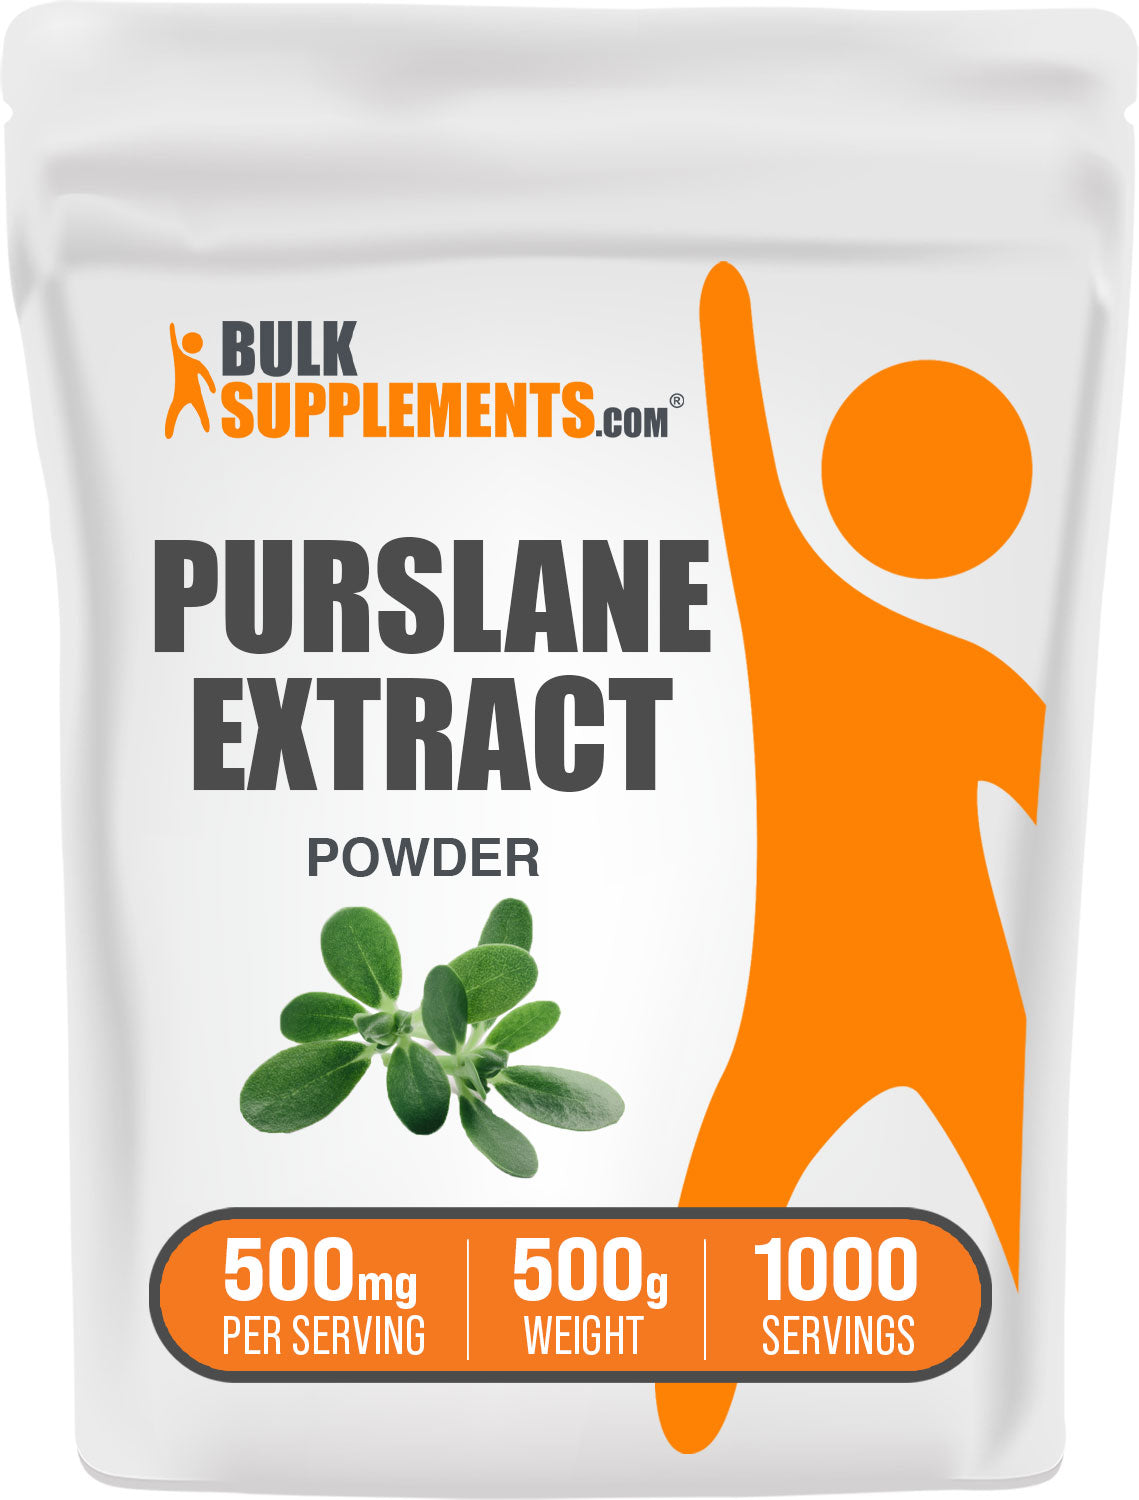 Purslane Extract 500g Bag